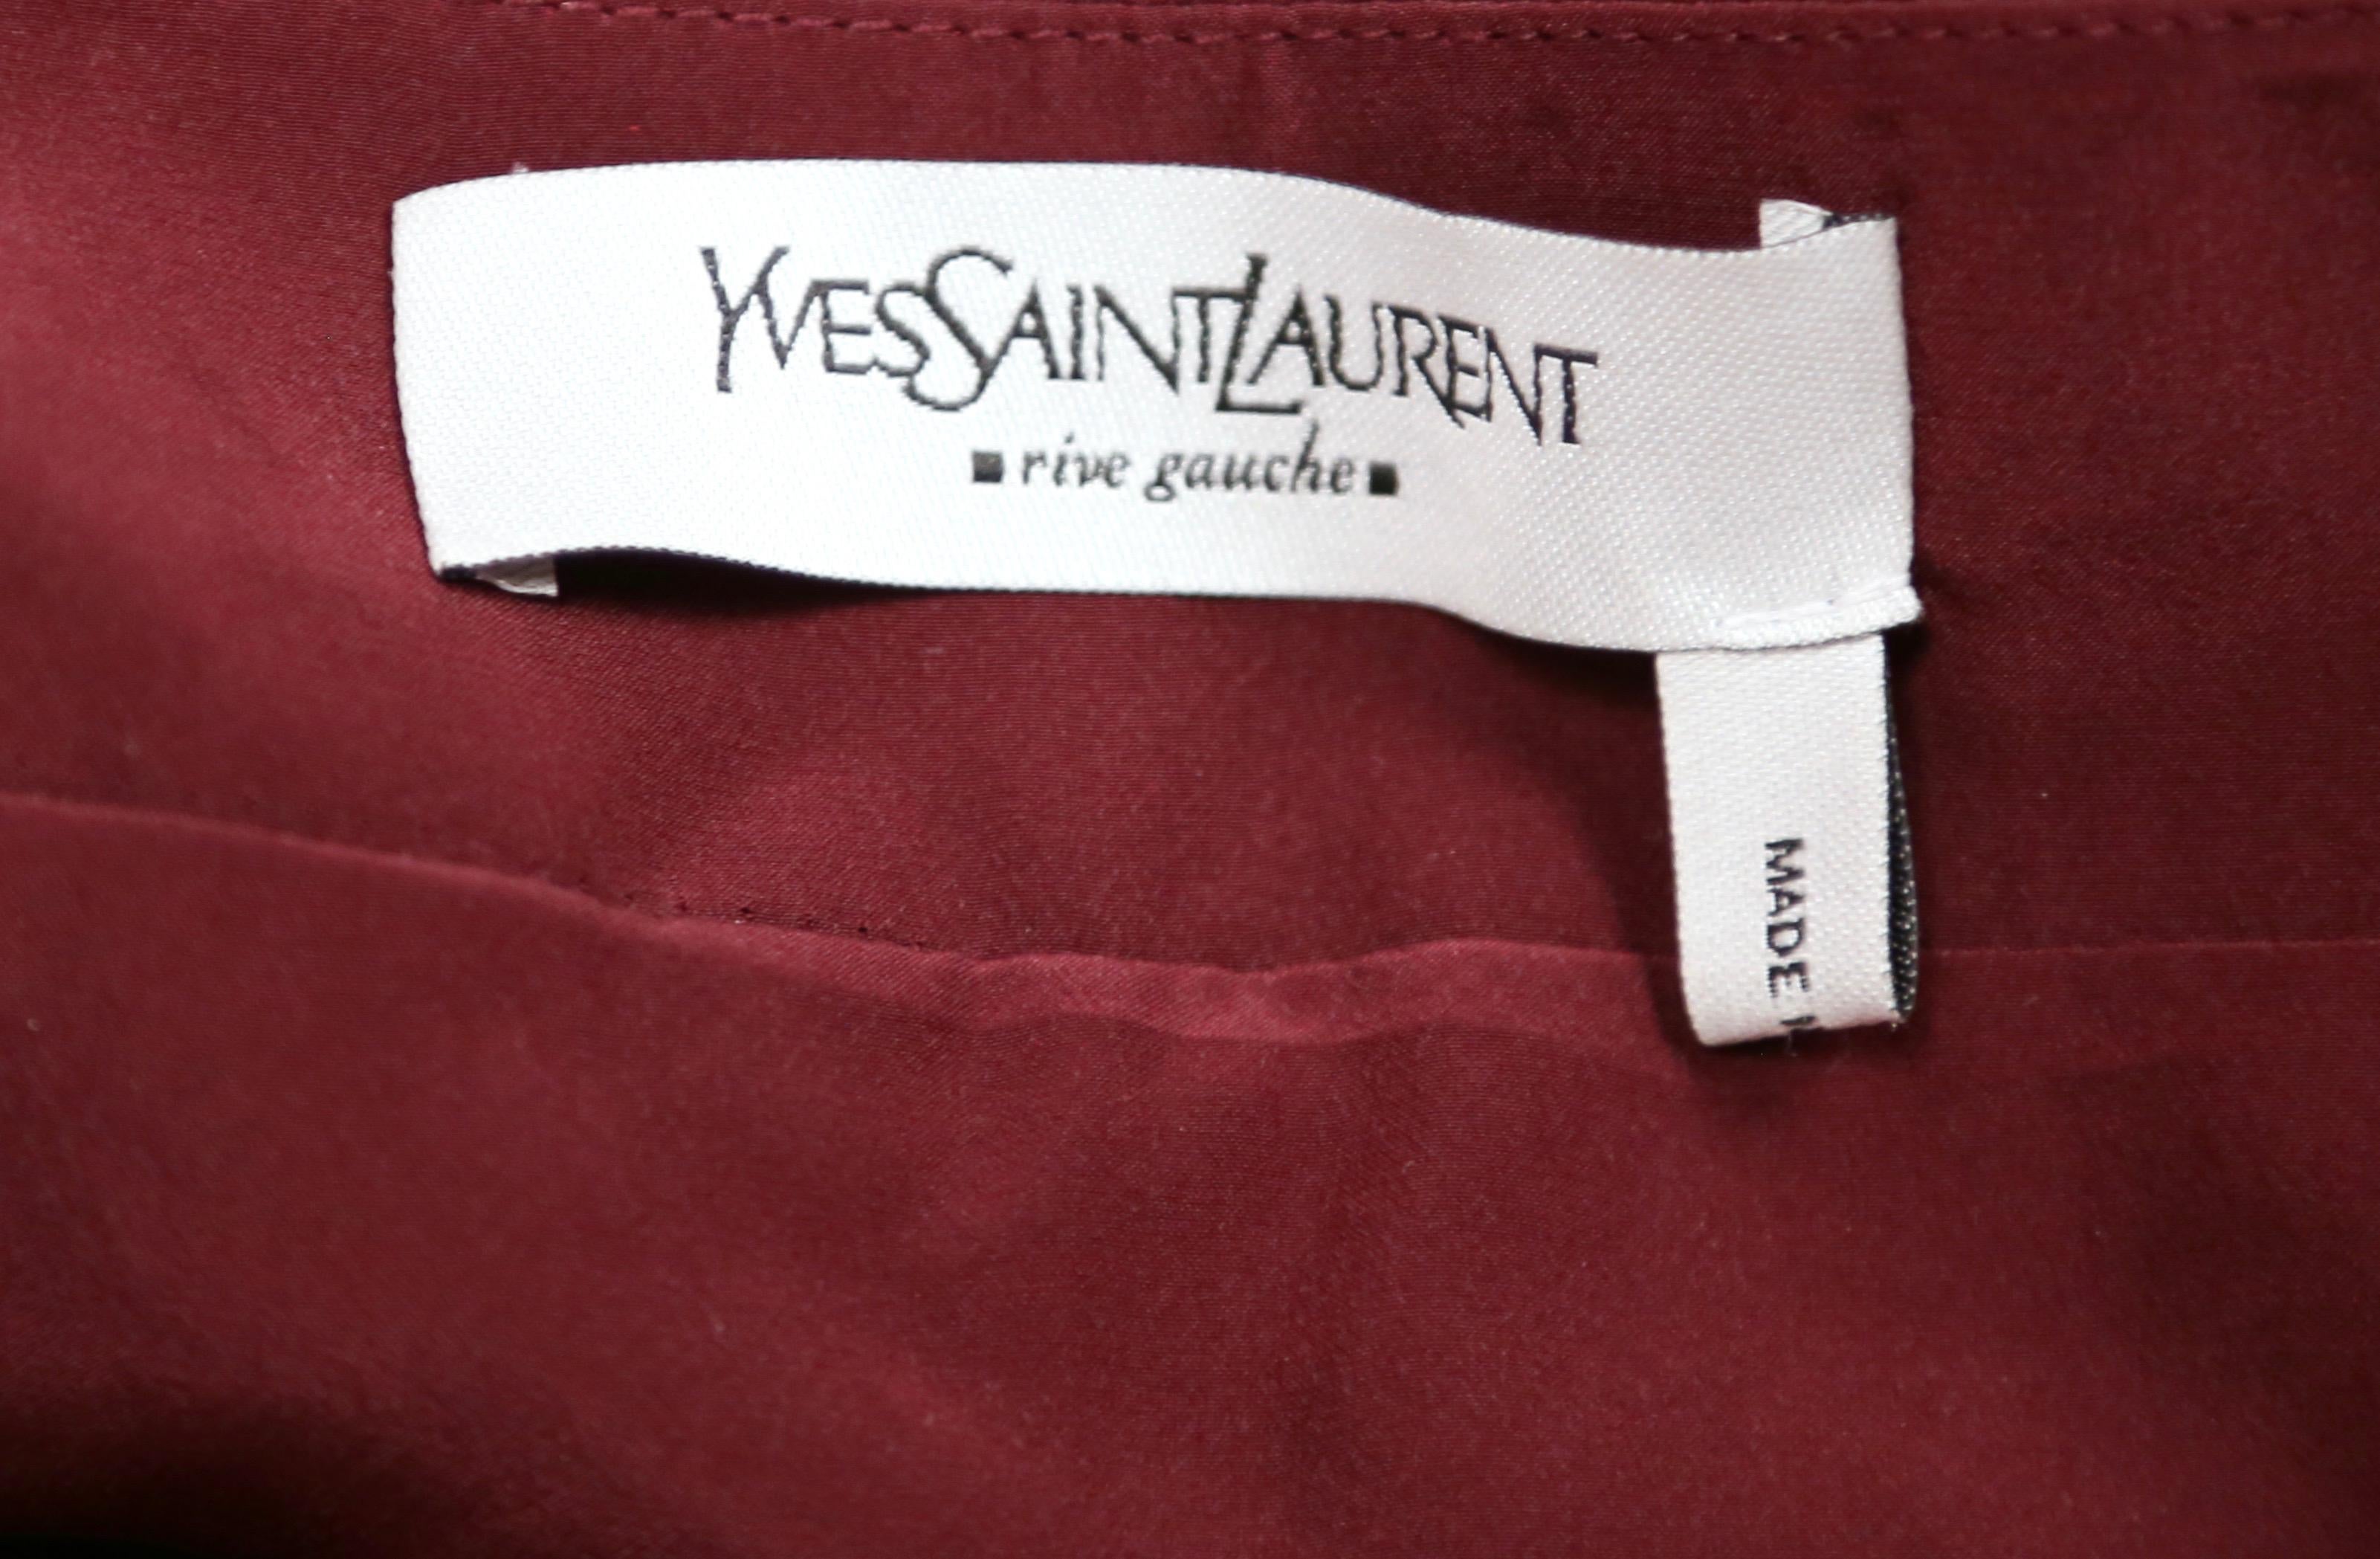 2002 TOM FORD for YVES SAINT LAURENT burgundy velvet runway suit For Sale 3